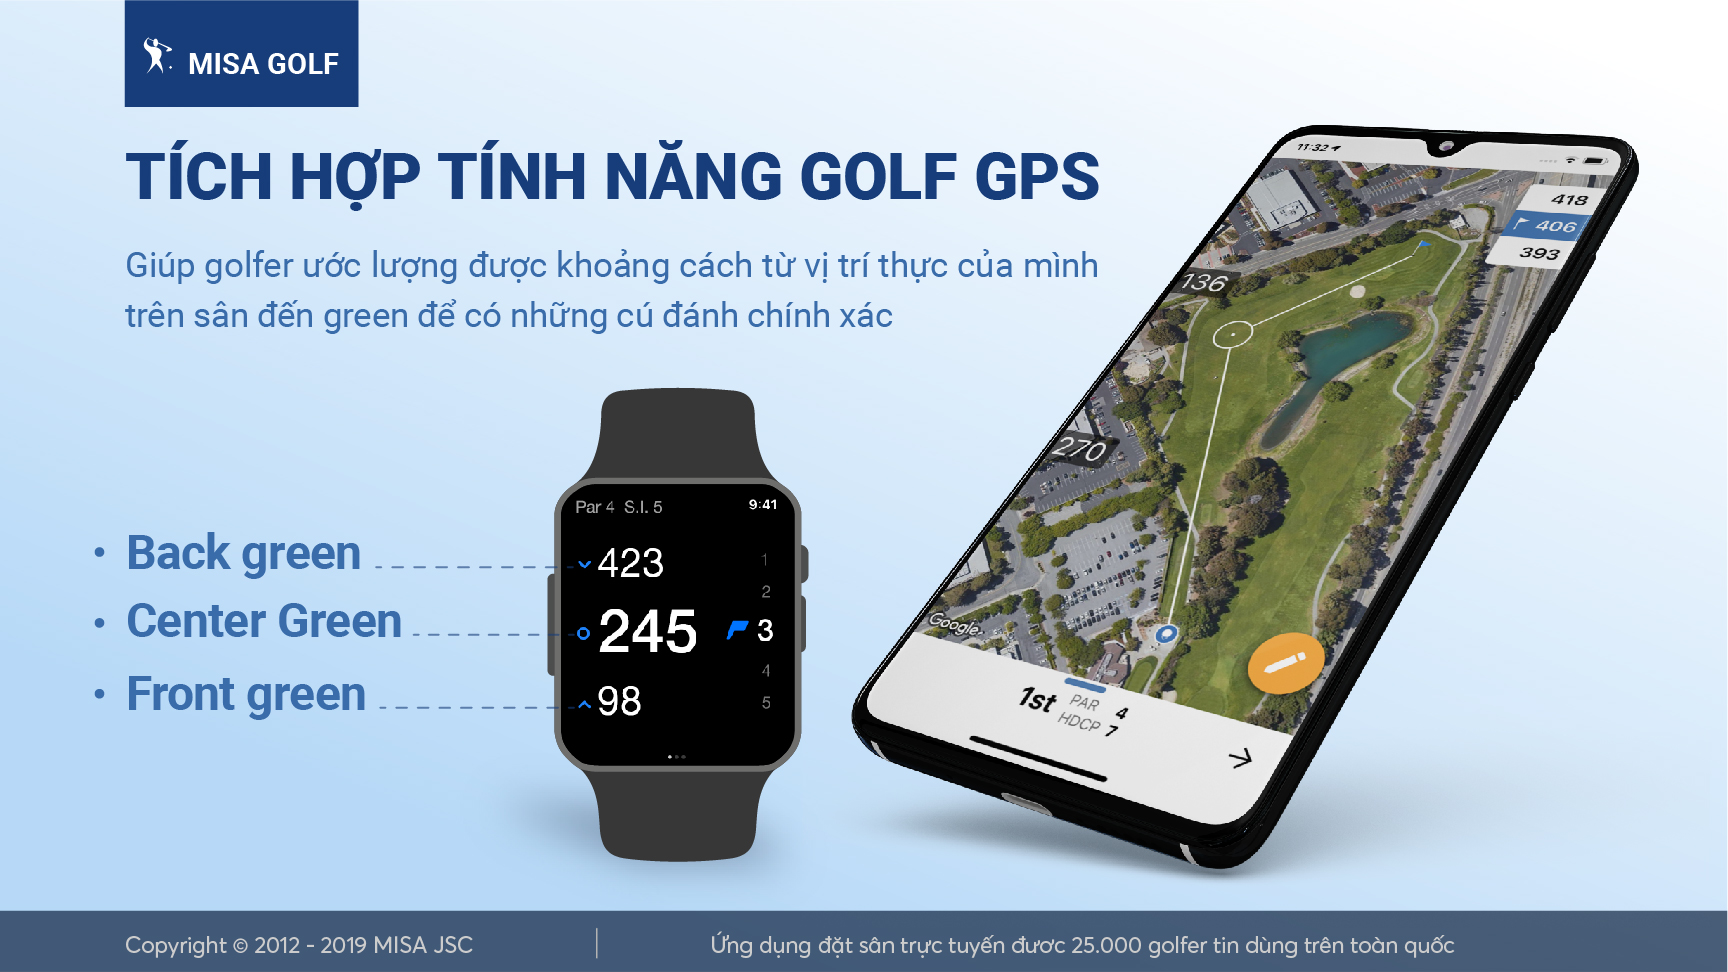 Tính năng Golf GPS của MISA Golf tích hợp trên tất cả các thiết bị di động thông minh